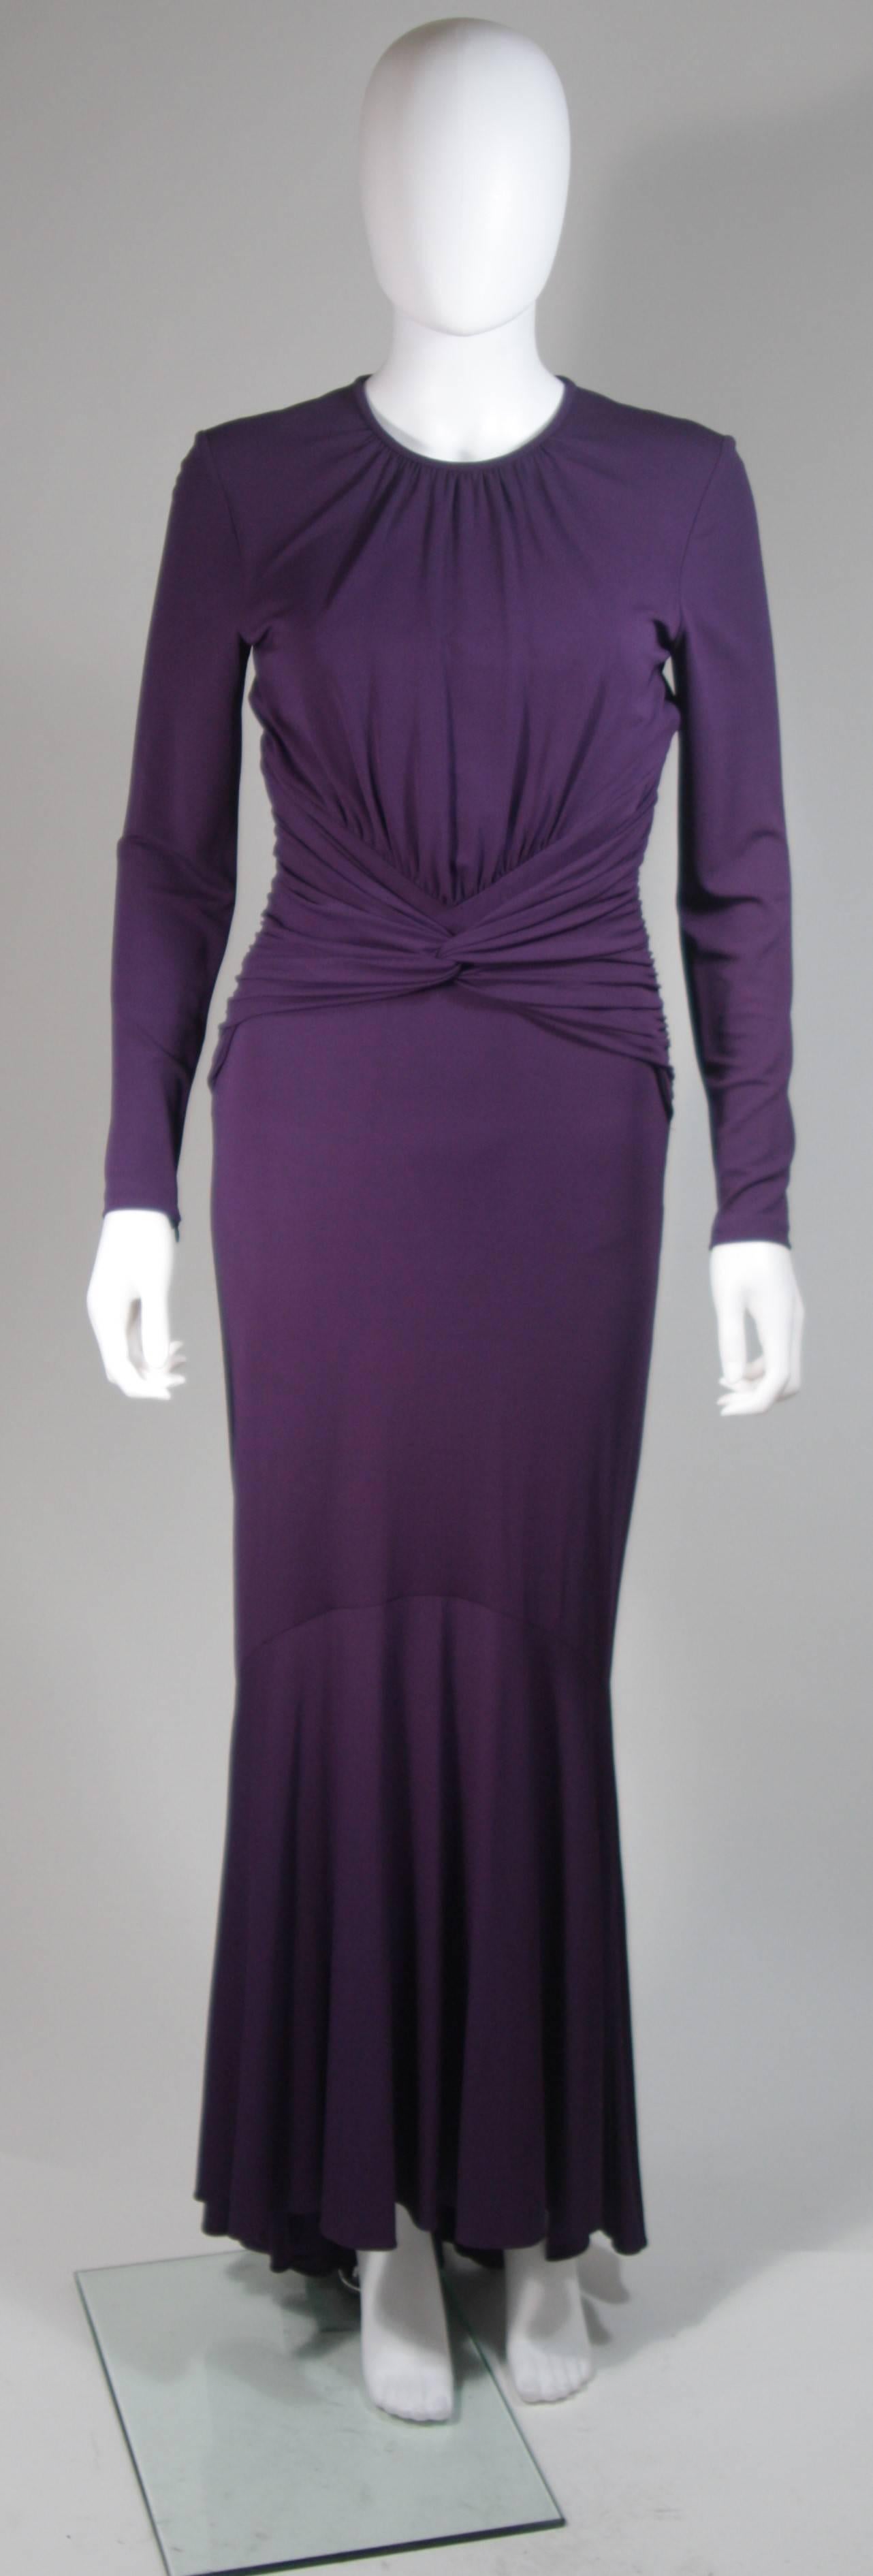 Dieses Kleid von Michael Kors besteht aus strahlend weichem lila Stretch-Jersey. Der klassische Langarm-Stil wird durch einen exquisiten offenen Rücken modernisiert. In der hinteren Mitte befindet sich ein oberer Knopfverschluss. In ausgezeichnetem